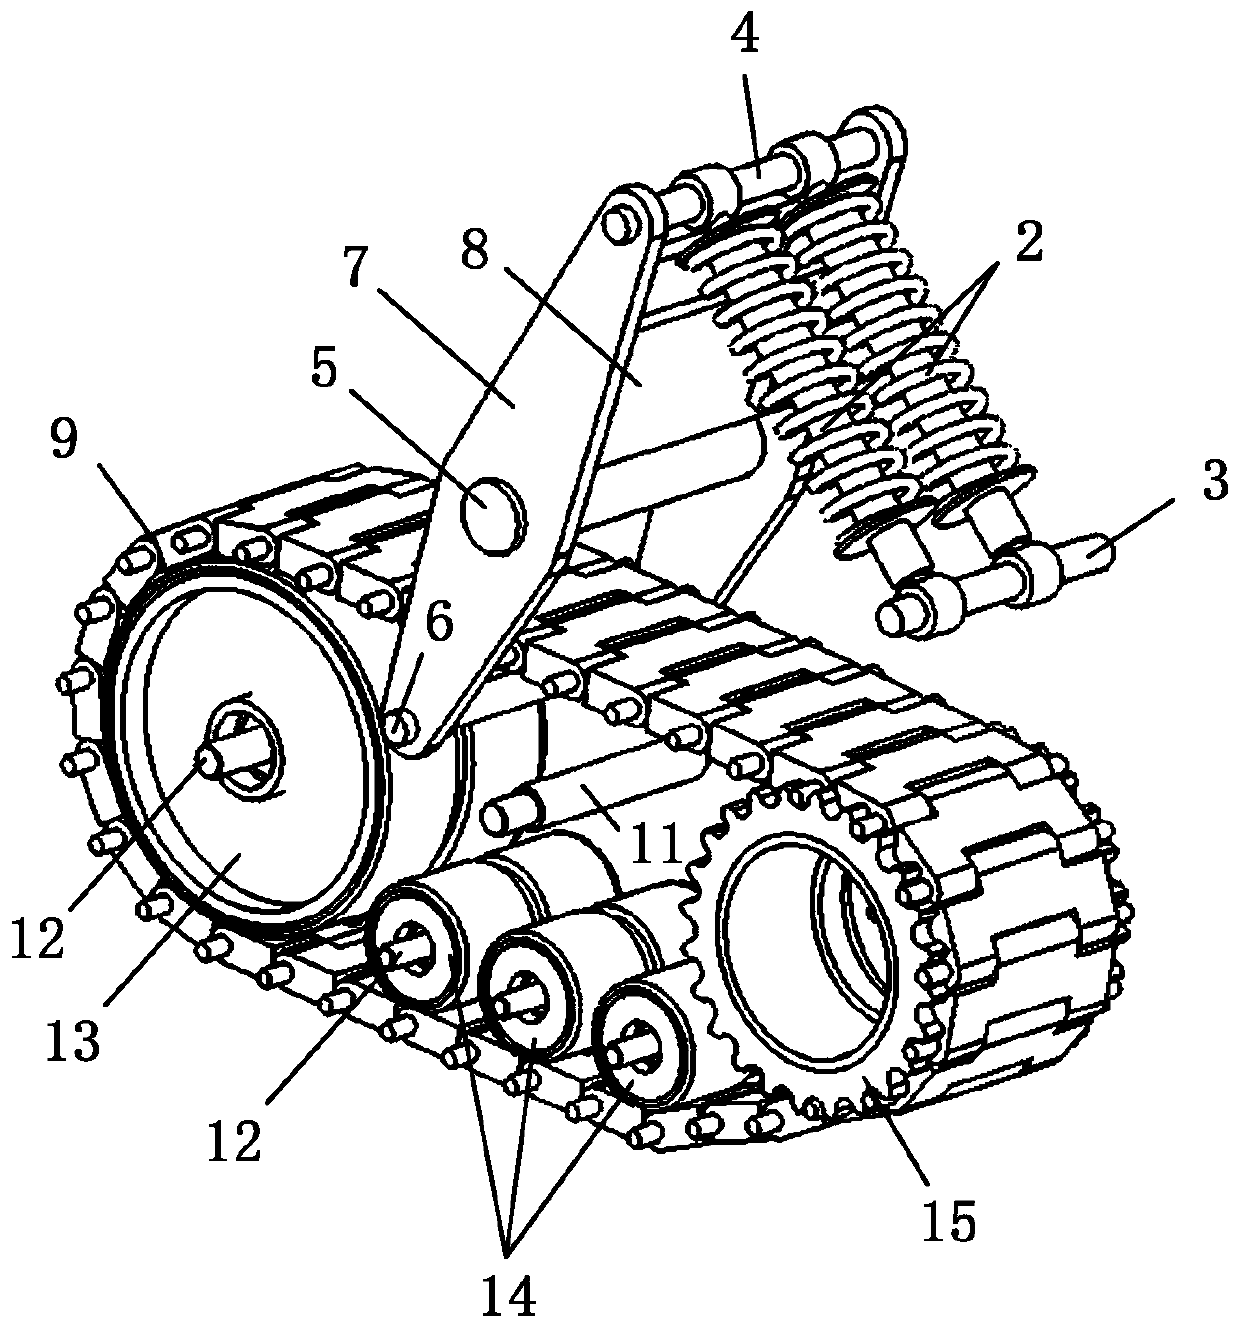 Crawler-type swing arm suspension type walking mechanism and crawler vehicle